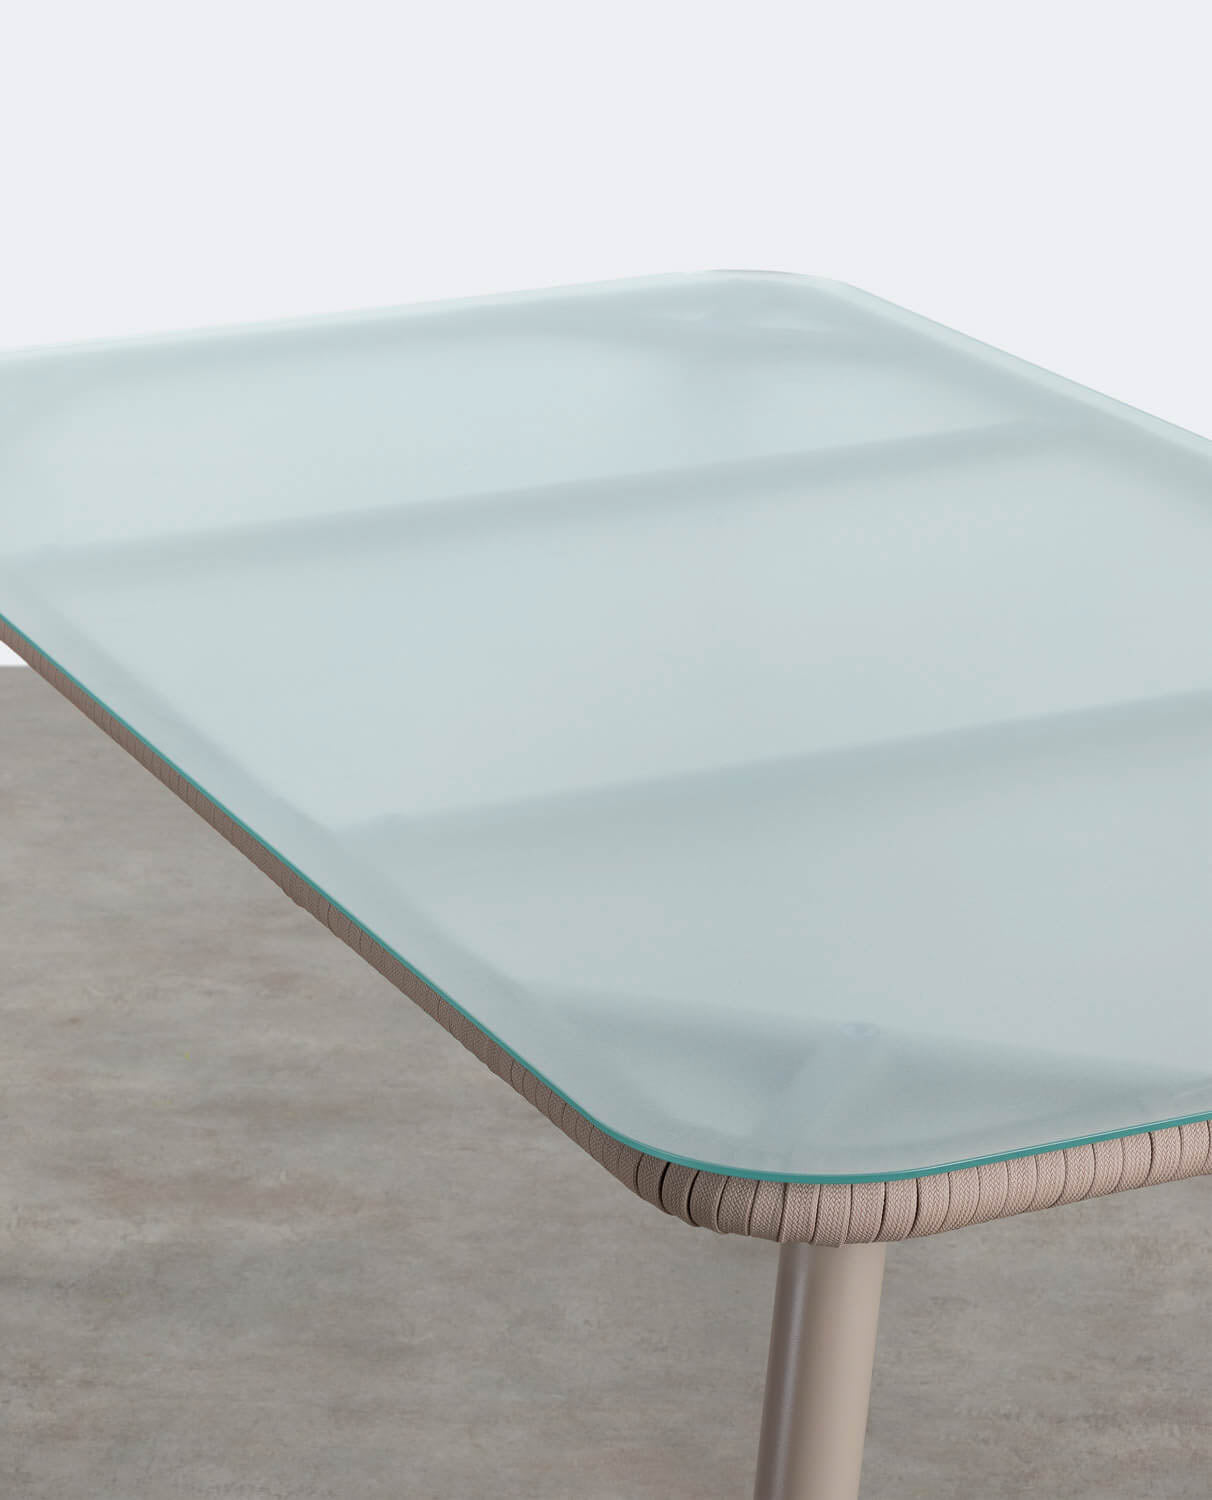 Mesa de Comedor Rectangular de Aluminio y Cristal (160x90 cm) Drian Marrón arabia y Marrón claro - The Masie